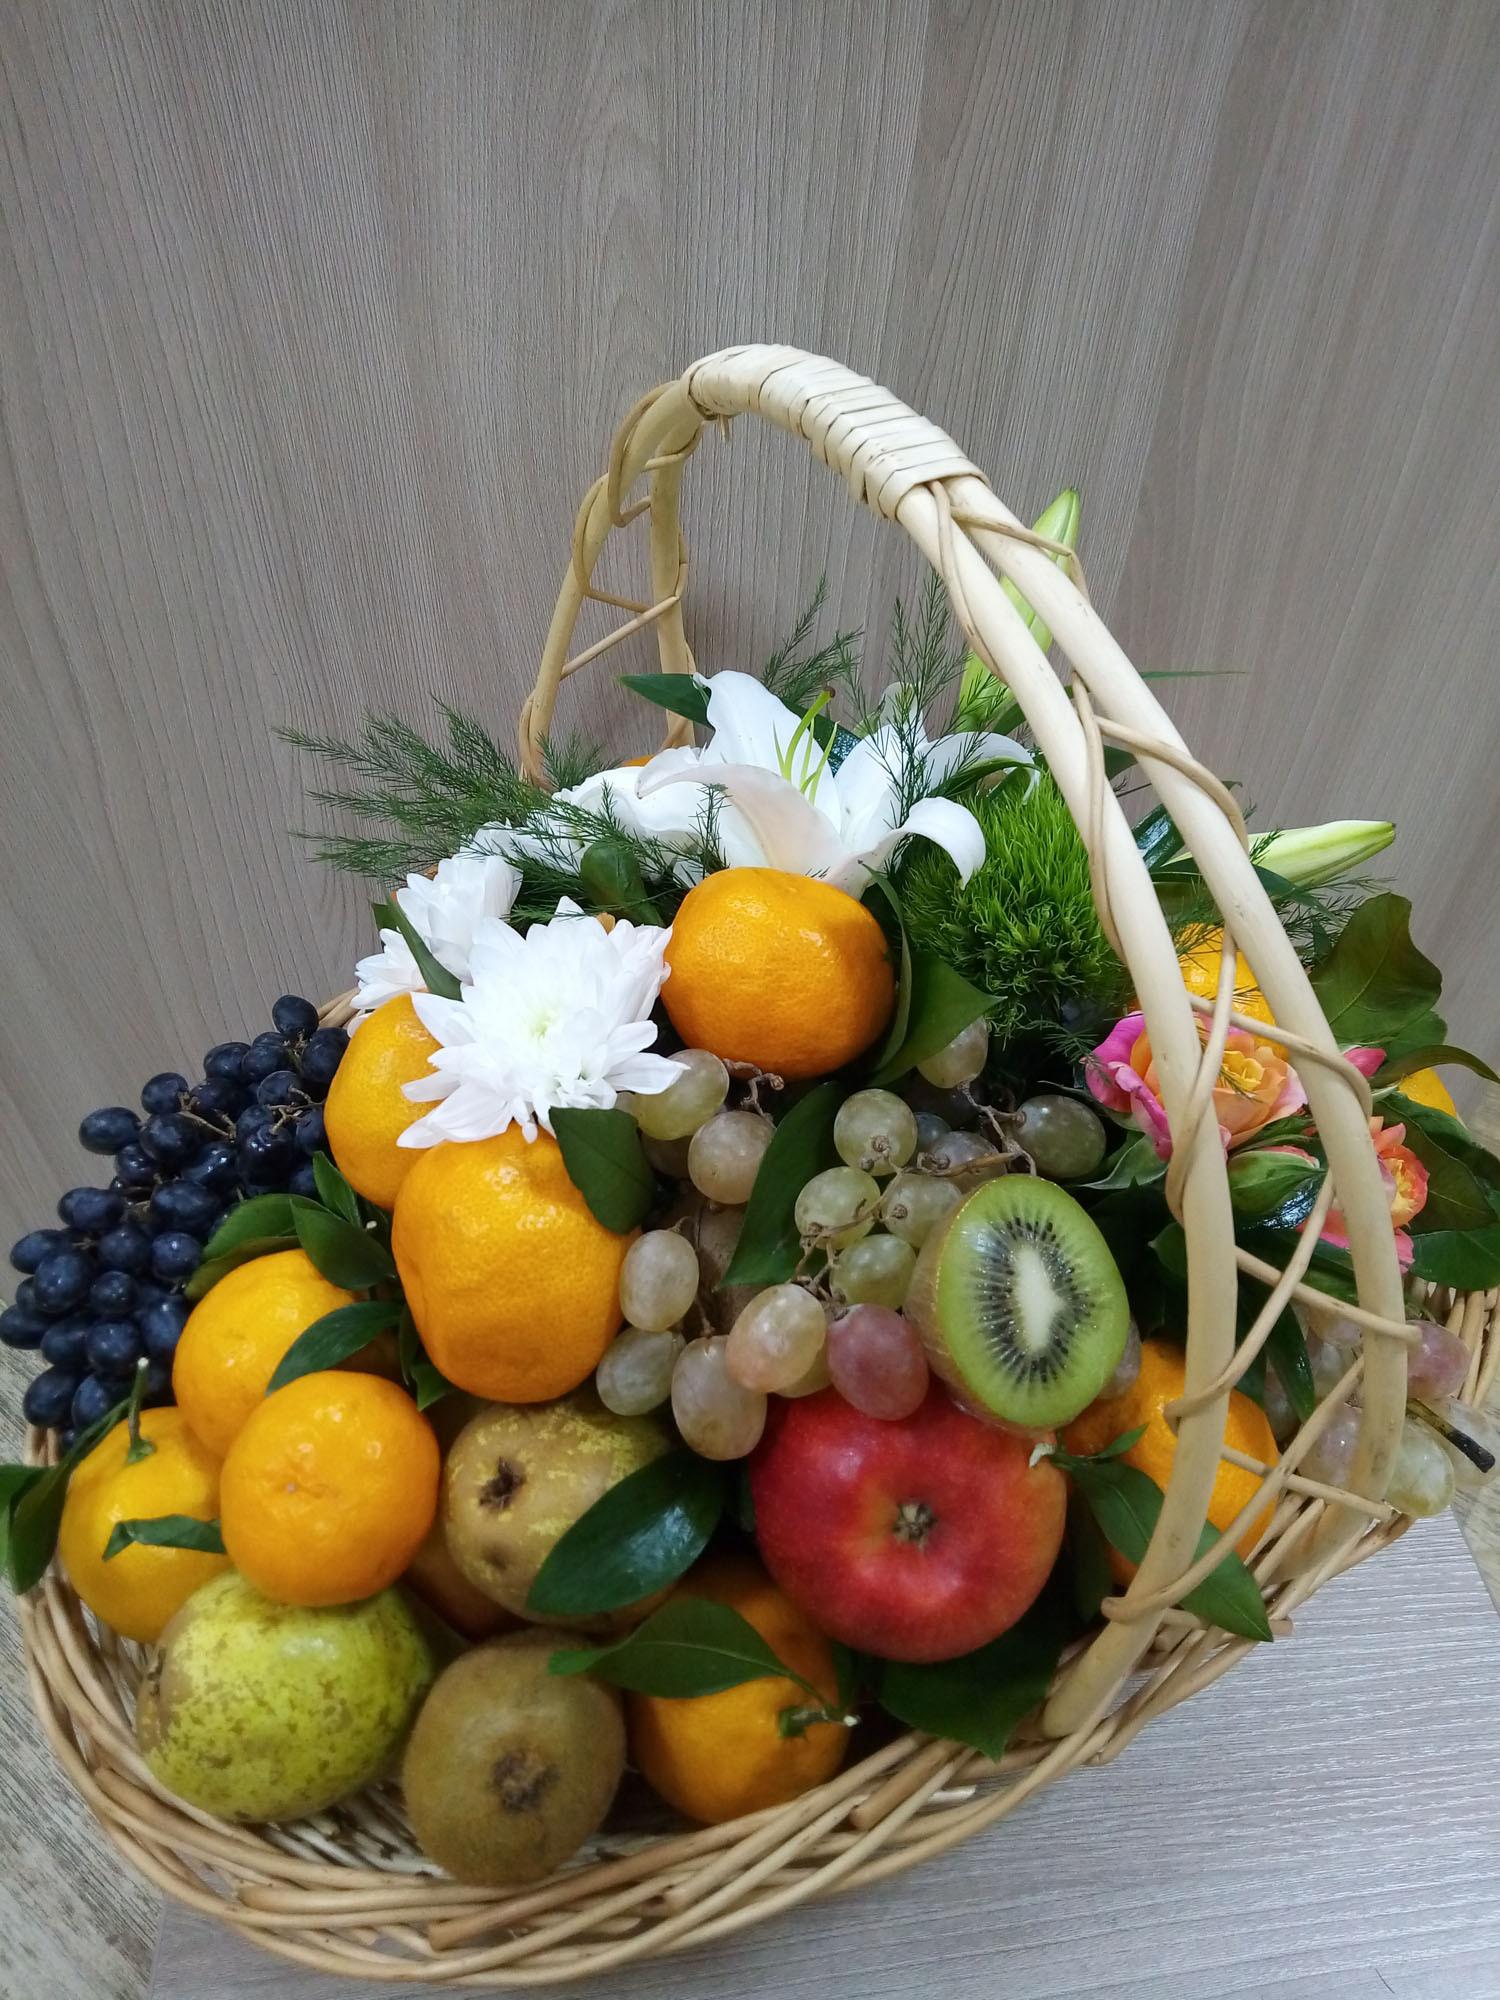 Композиция в корзине с цветами и фруктами №1